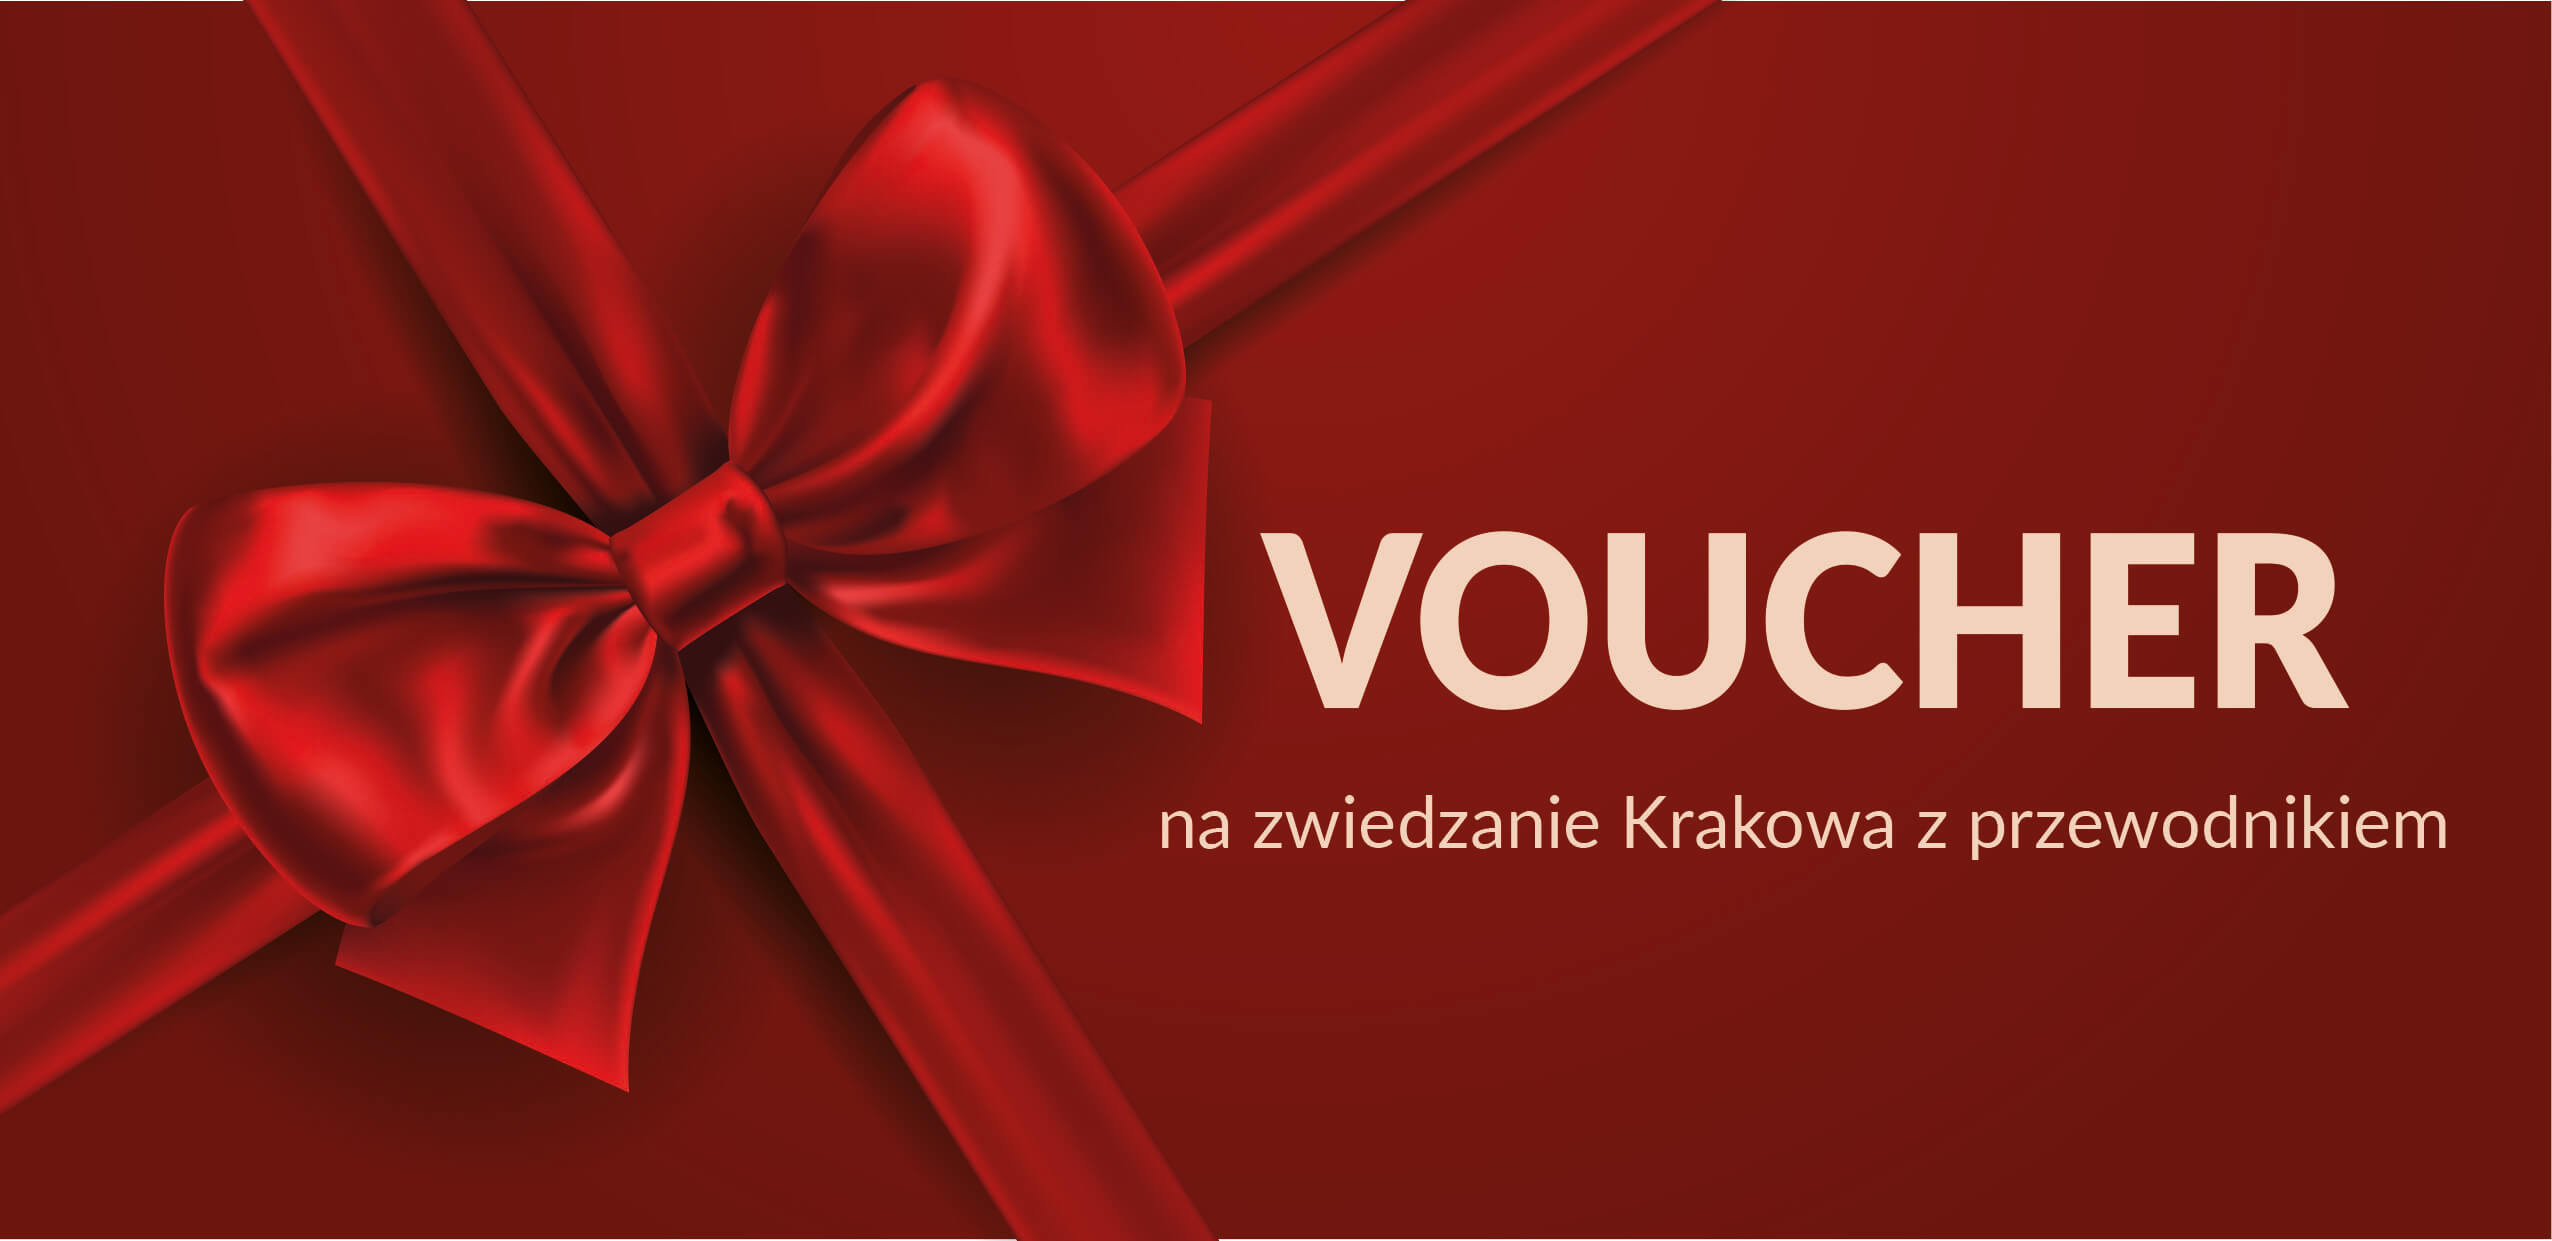 Voucher Prezentowy na zwiedzanie Krakowa